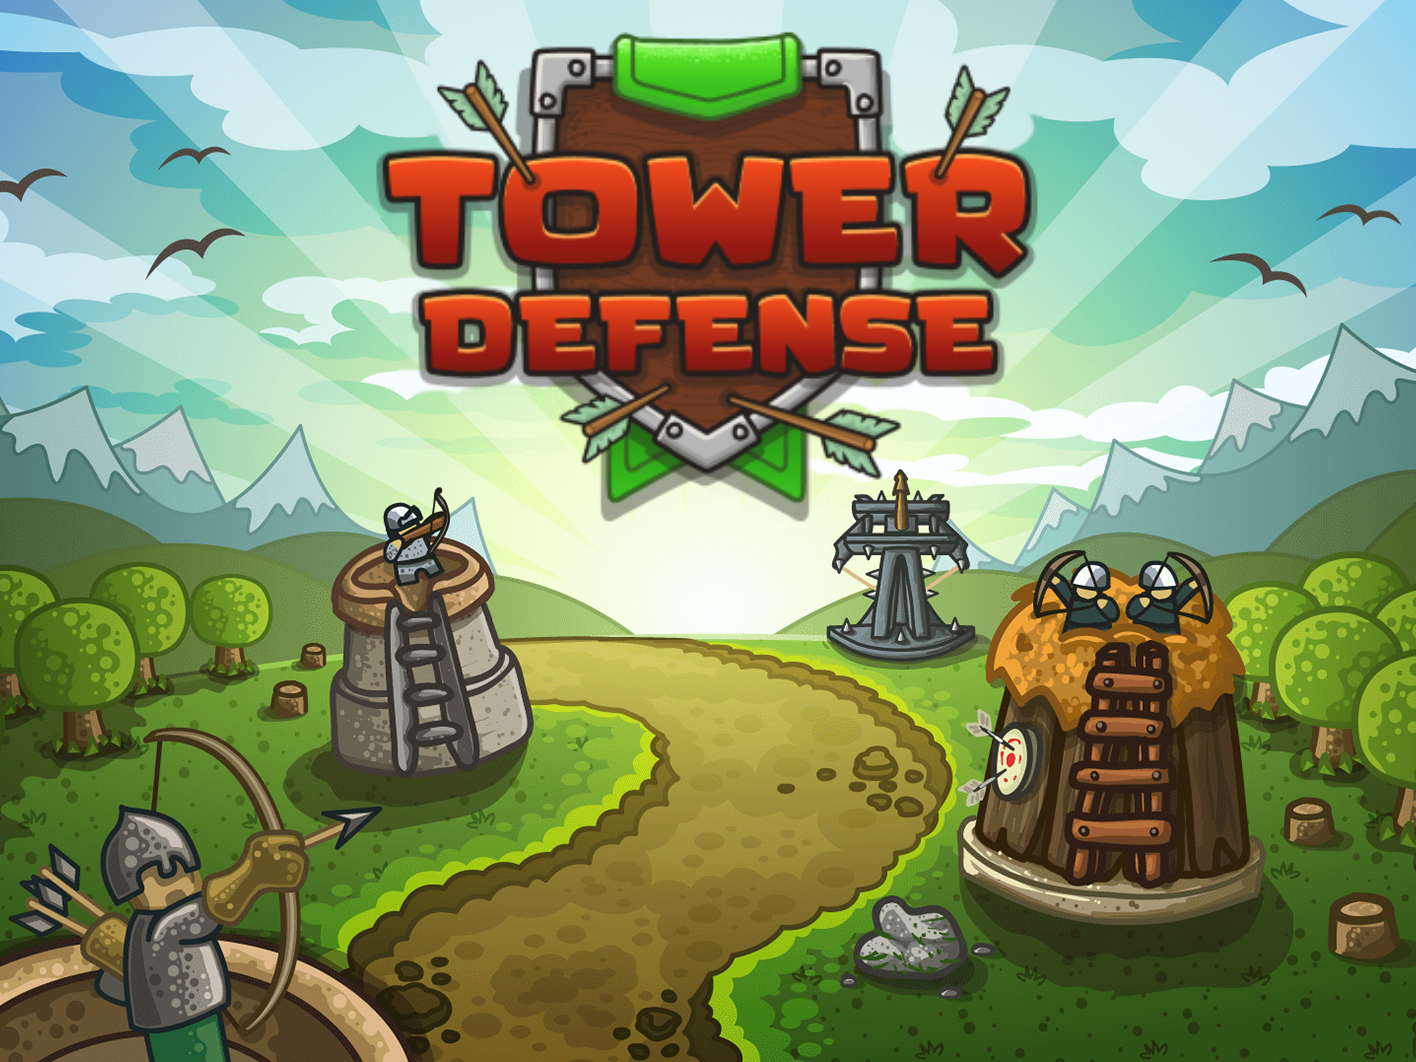 Включить игру башня. Tower Defense башни. Игра Tower Defense 1. Tower Defense башенки. Оборона башни / Tower Defense.